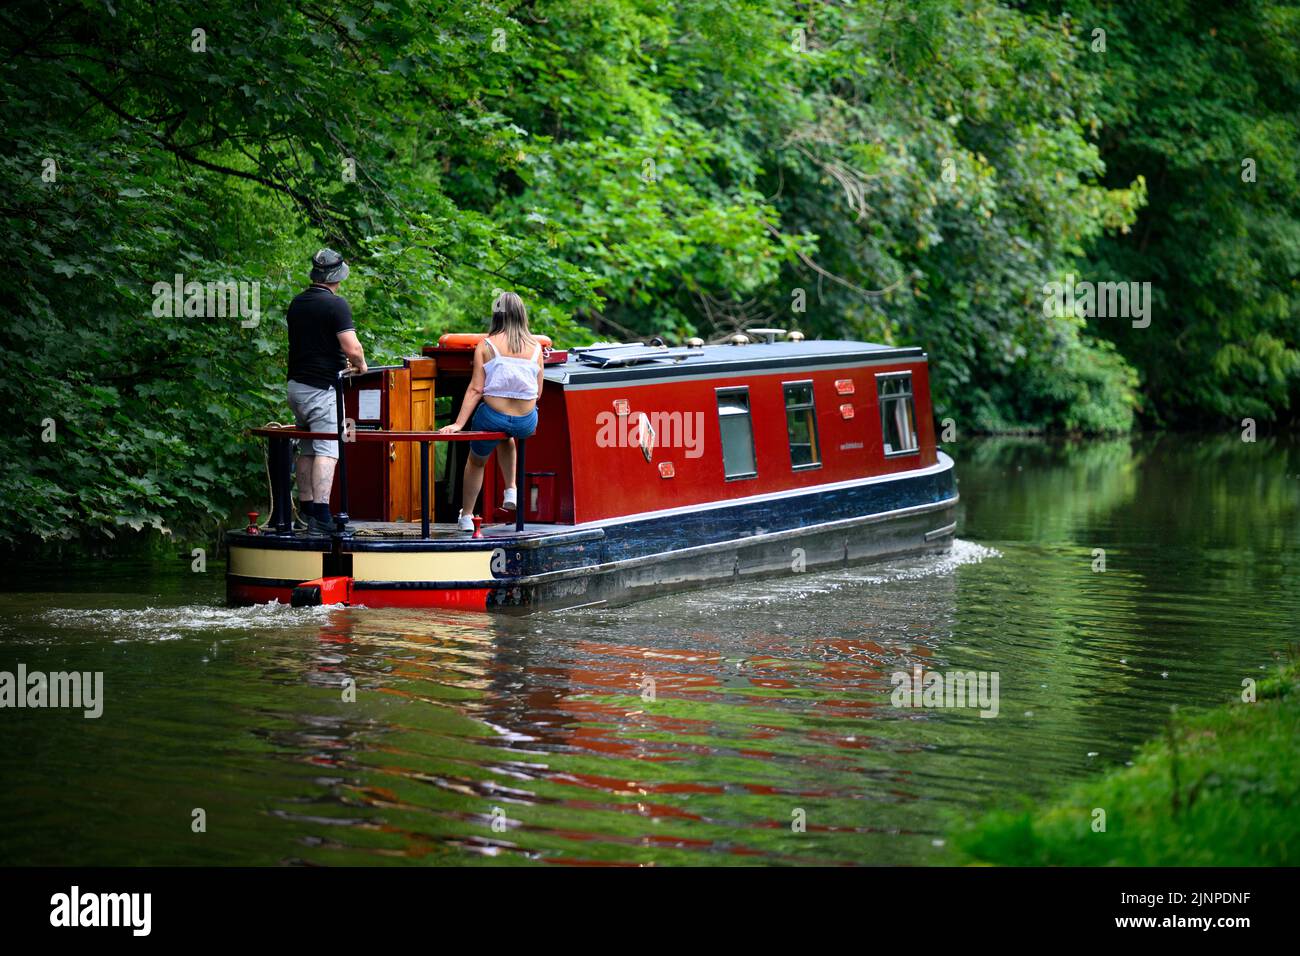 Coppia che si rilassa su una barca stretta in stile incrociatore rosso che si muove lentamente lungo la panoramica e tranquilla zona rurale Leeds Liverpool Canal - Bingley, West Yorkshire, Inghilterra, Regno Unito. Foto Stock